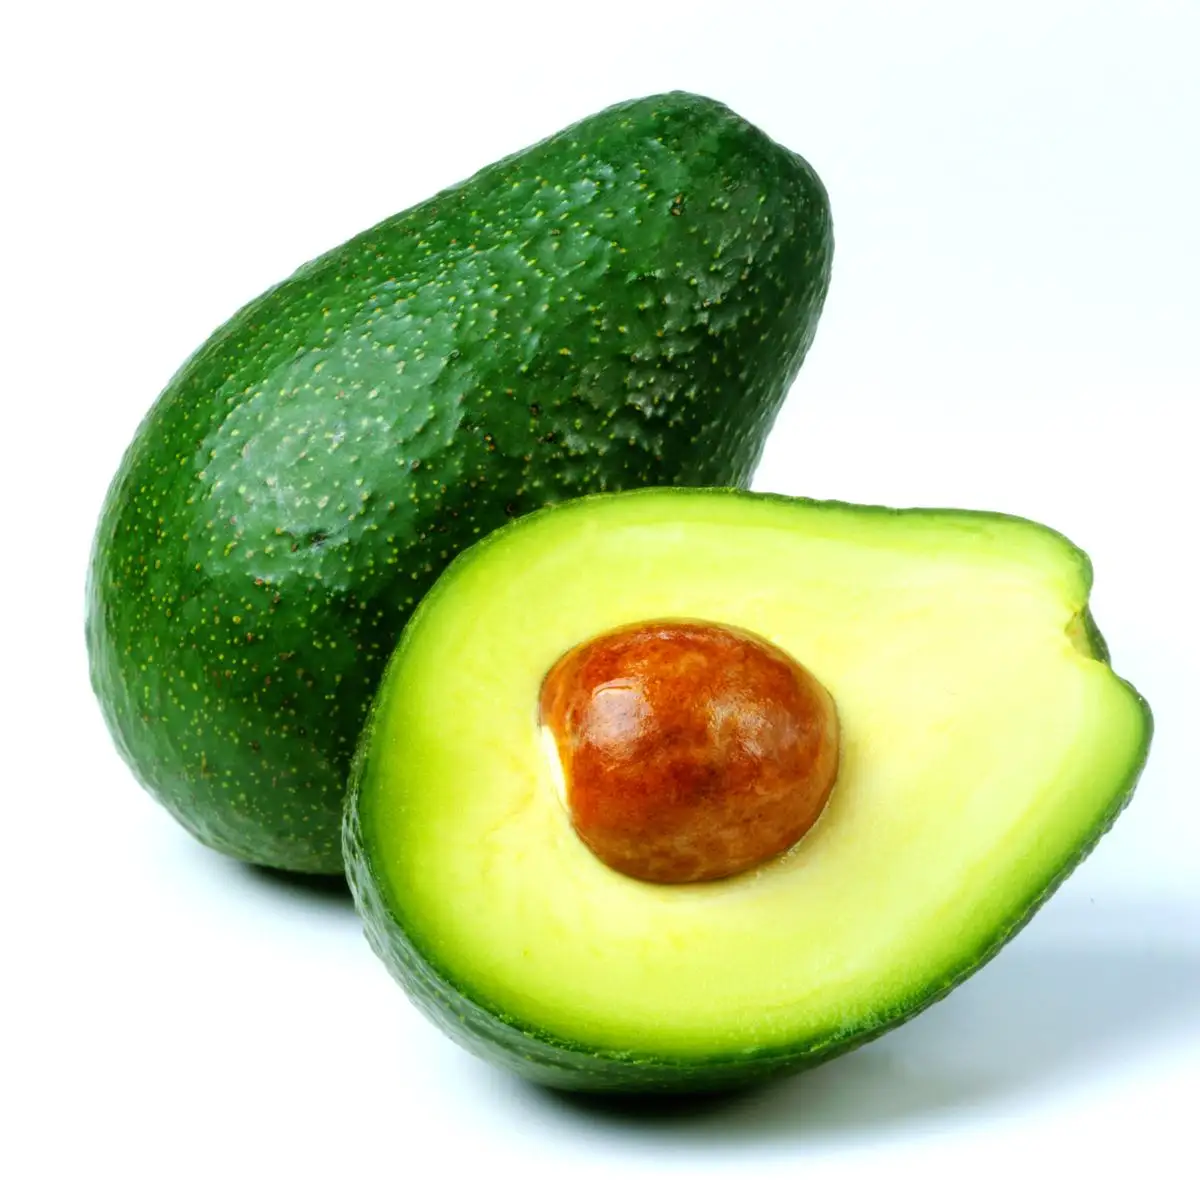 Avocado Verse Aguacate Palta Hass Verse Fruit Hass Avocado 'S Voor Verkoop Rijke Groene Premium Tropische Peru Doos Stijl Kaliber Verpakking